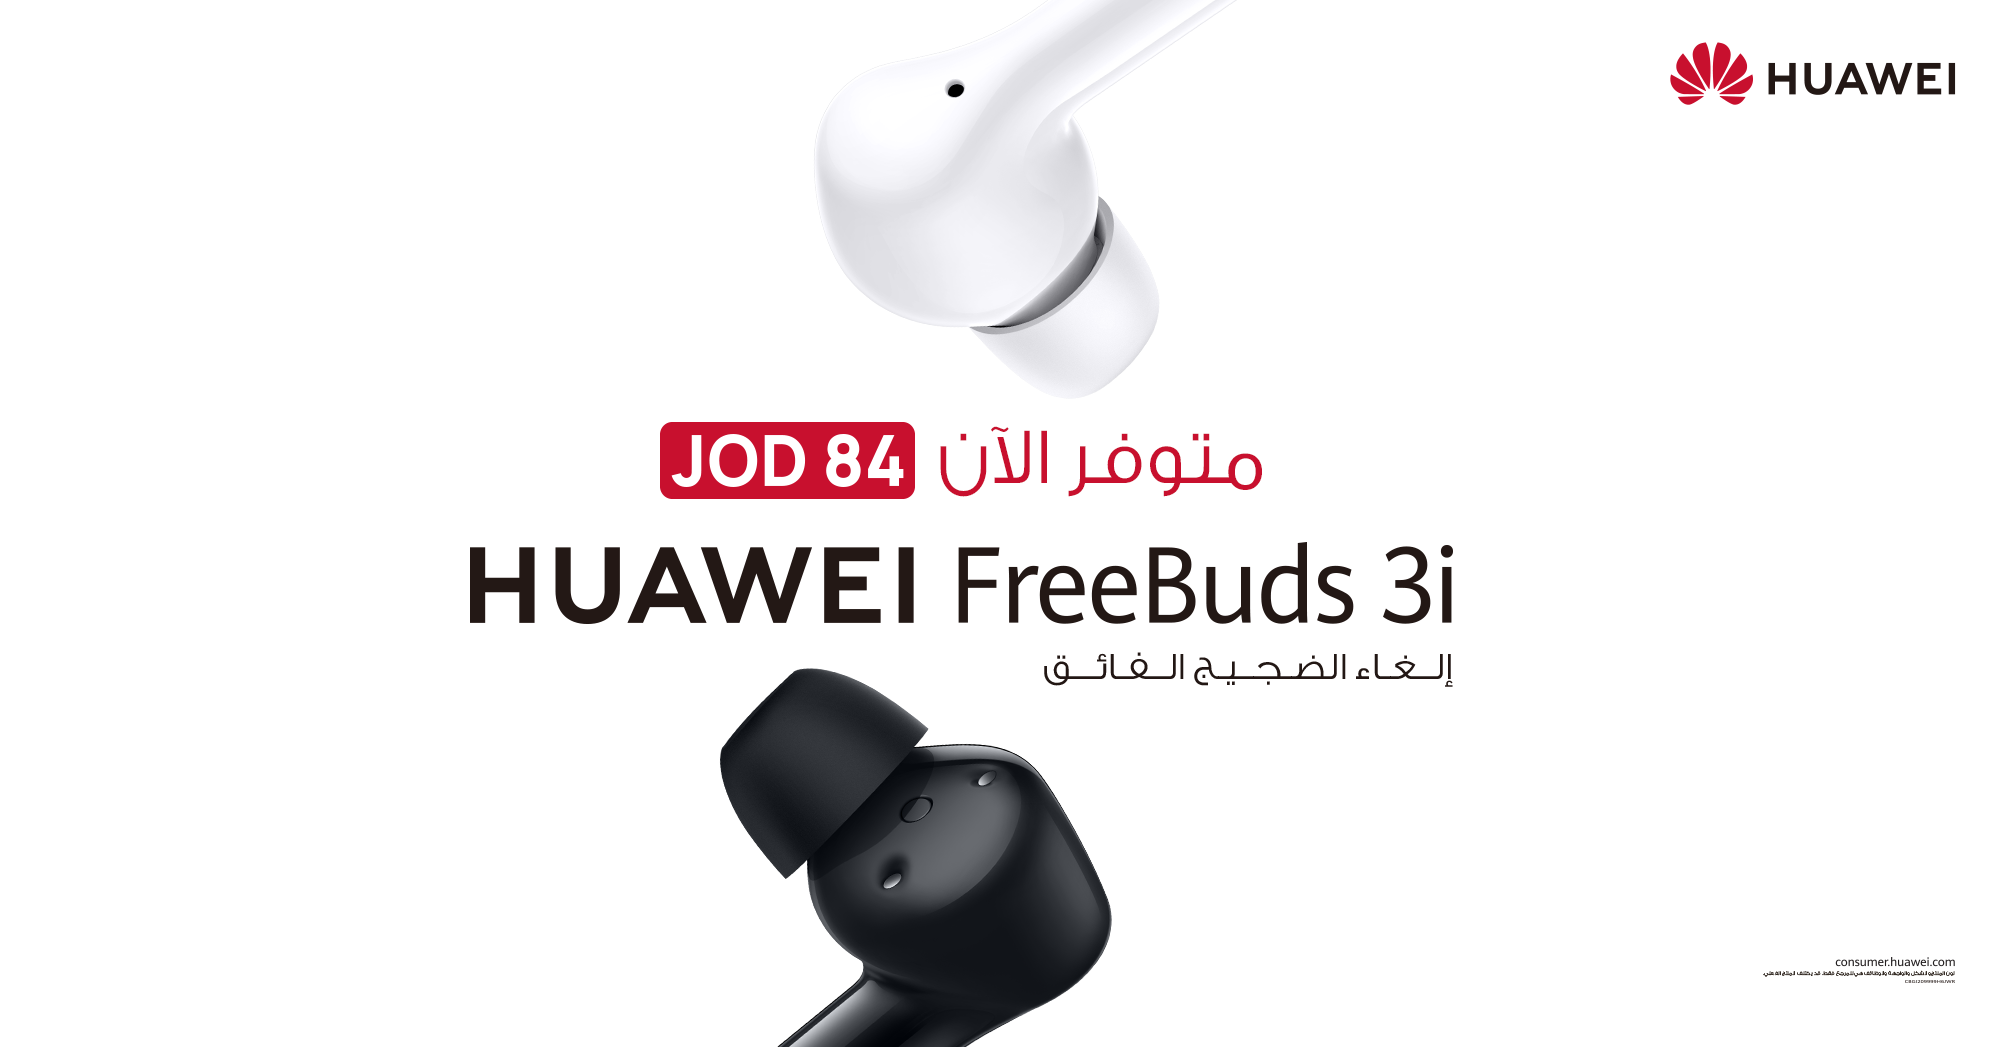 شريكك الصوتي المثالي الذي يلغي الضجيج أكثر من أي وقت مضى!  سماعات Huawei FreeBuds 3i متاحة للبيع في الأردن وبسعر في متناول اليد